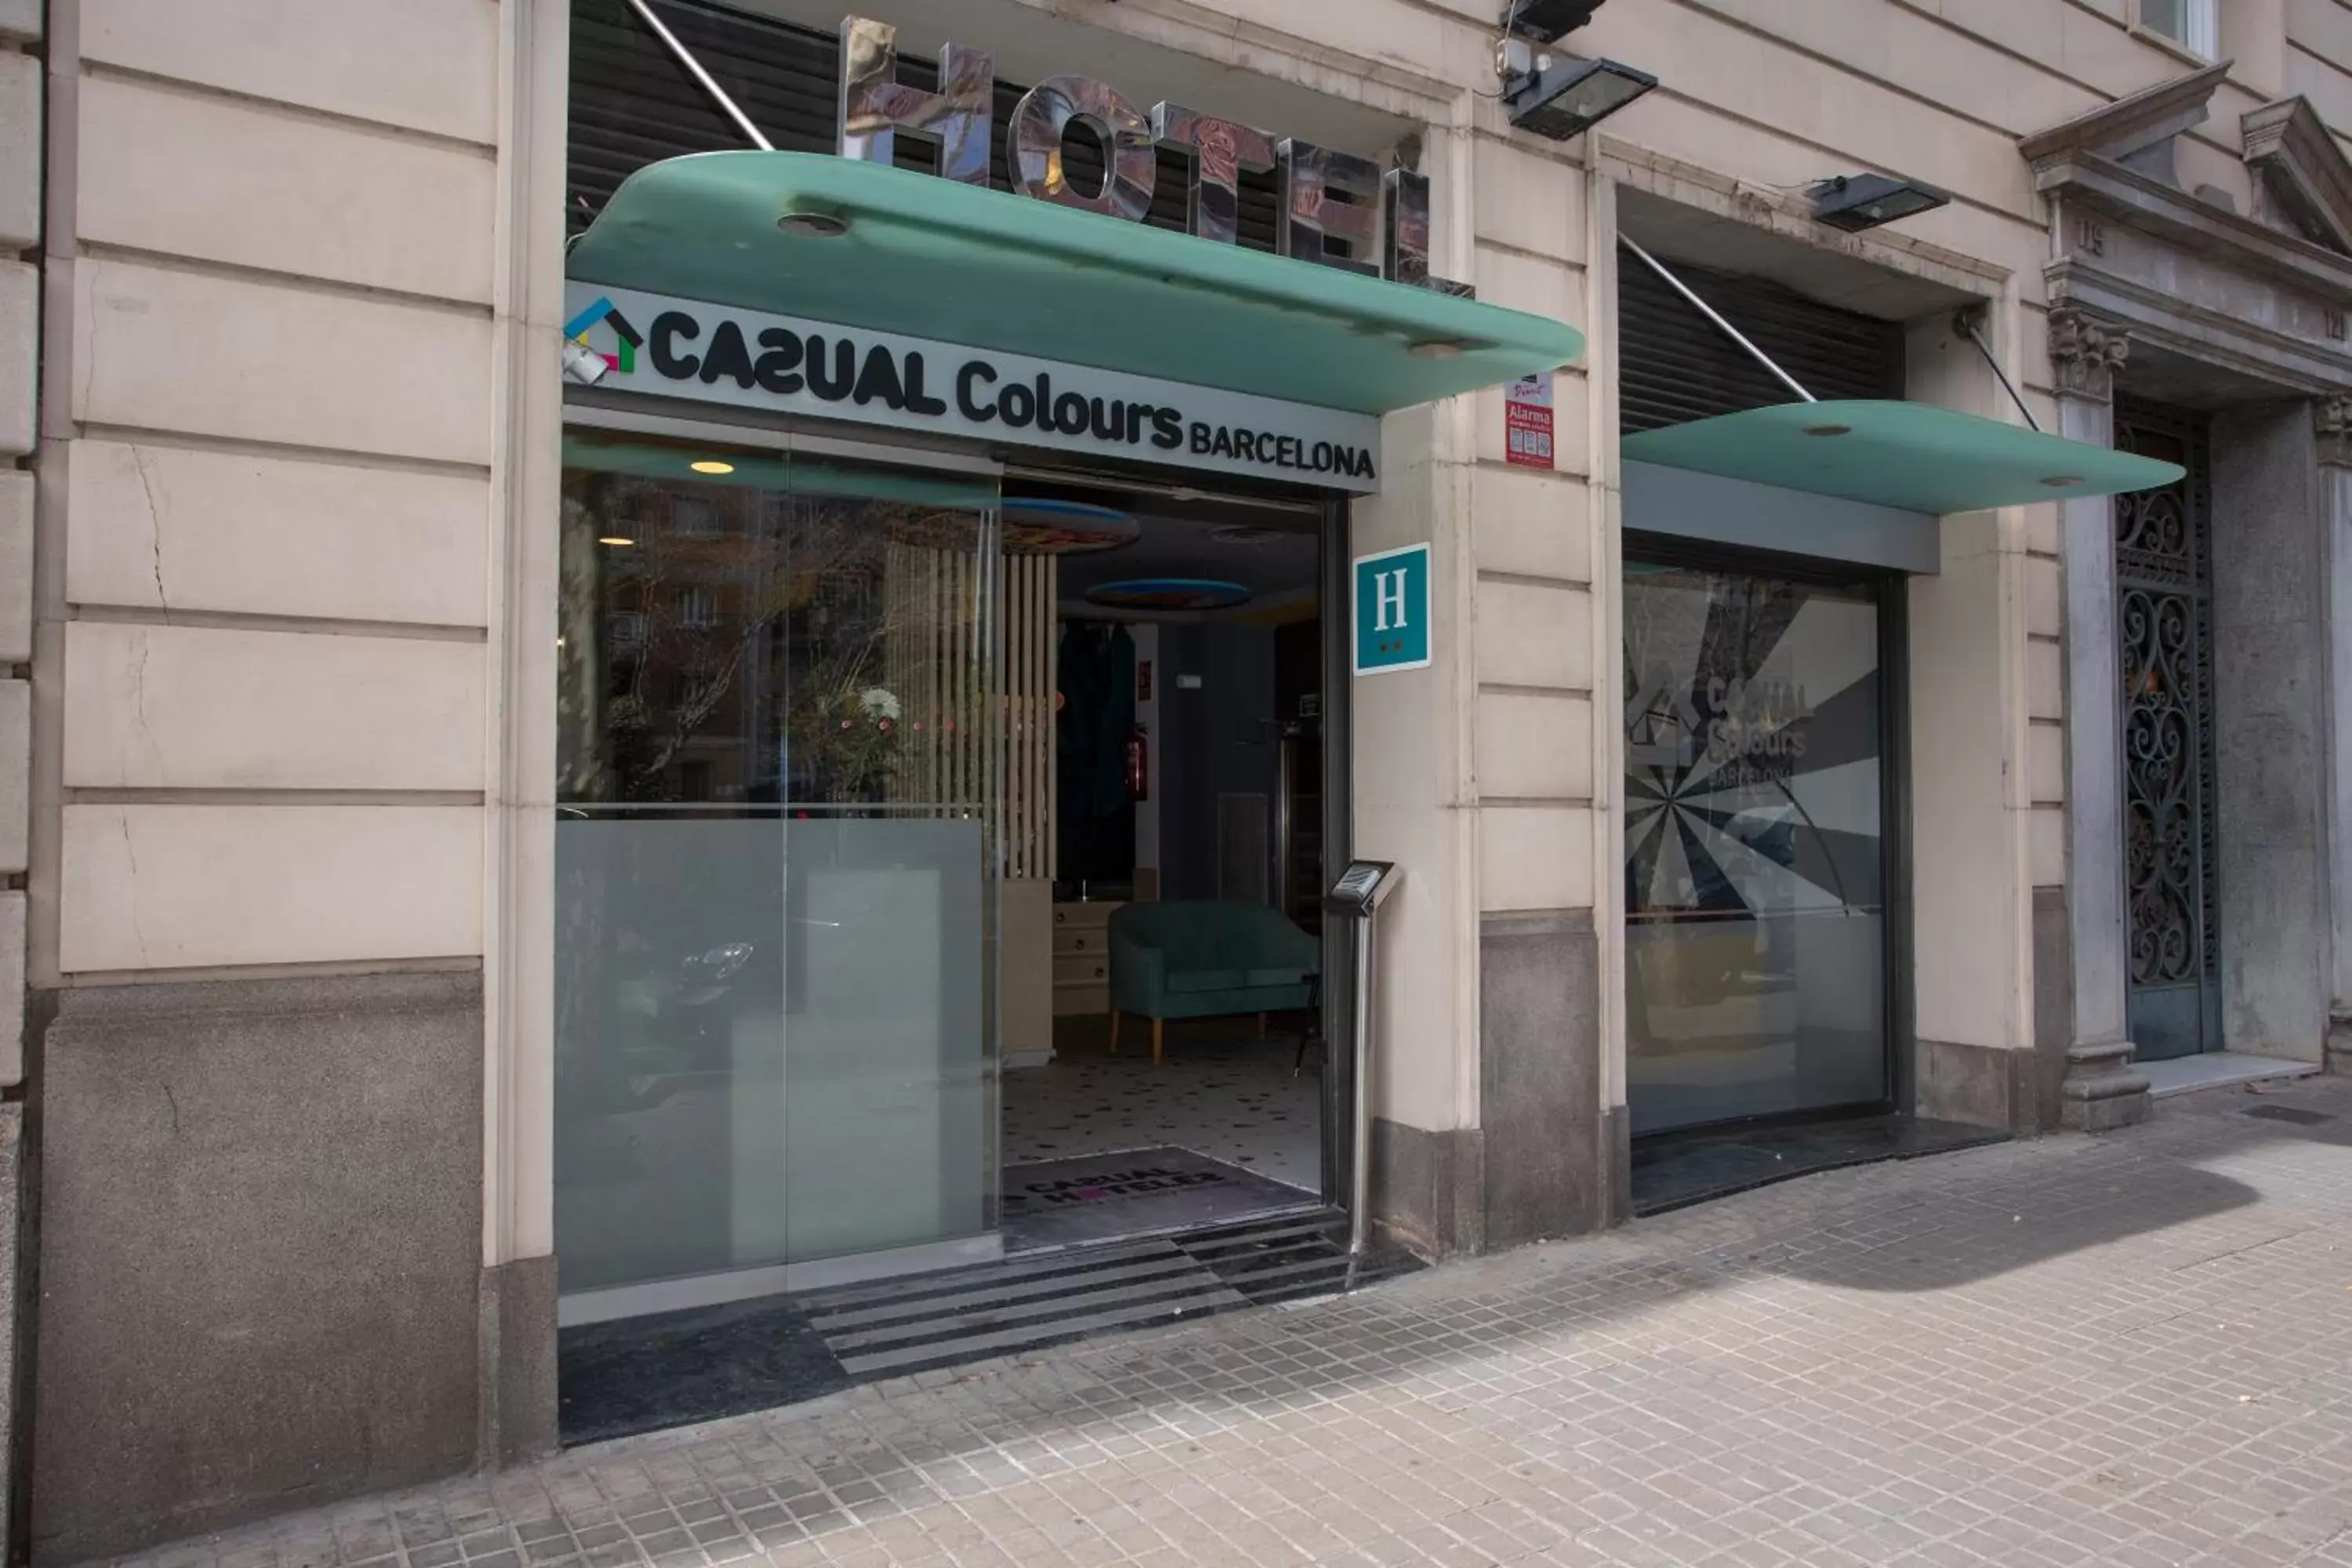 Facade/entrance in Casual Colours Barcelona